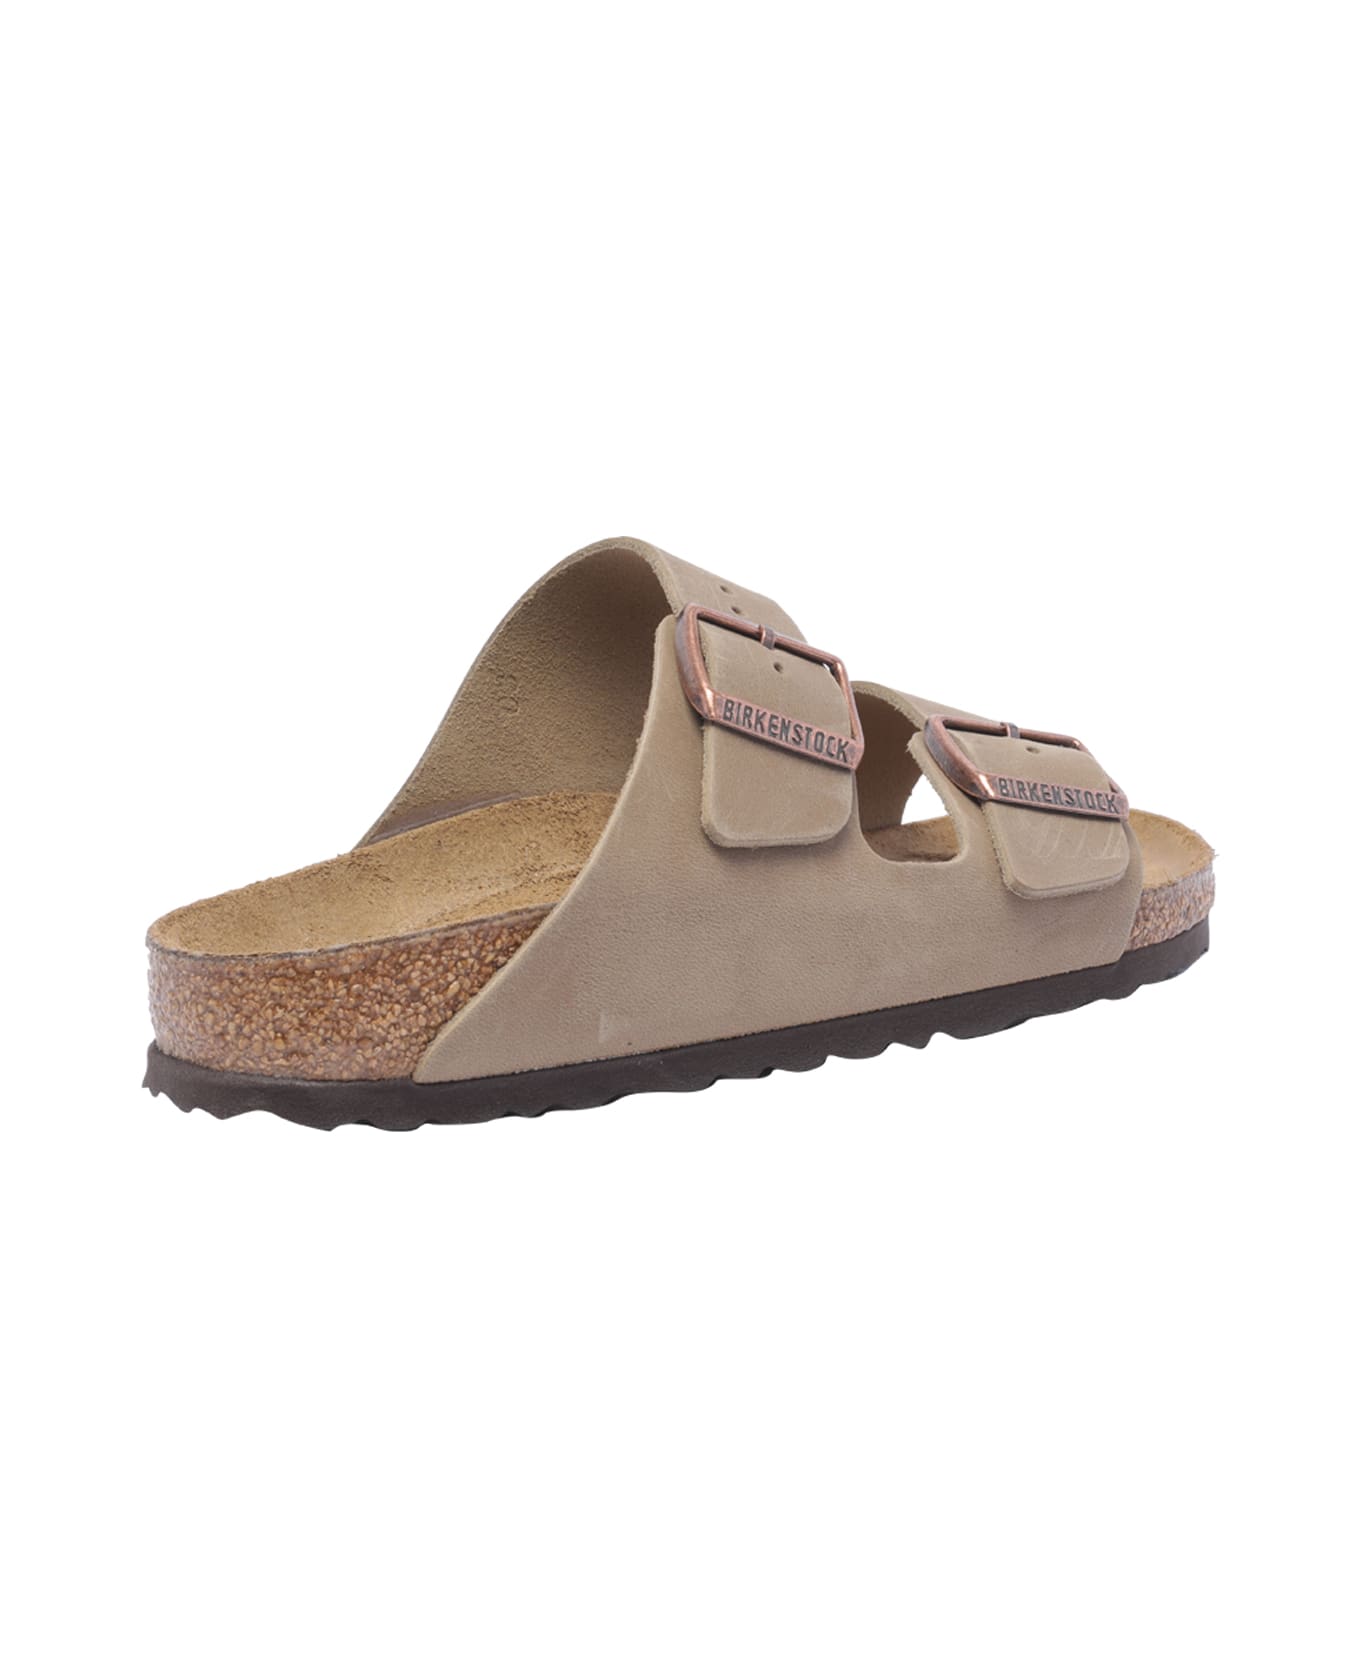 Birkenstock Arizona Sandals - Beige フラットシューズ